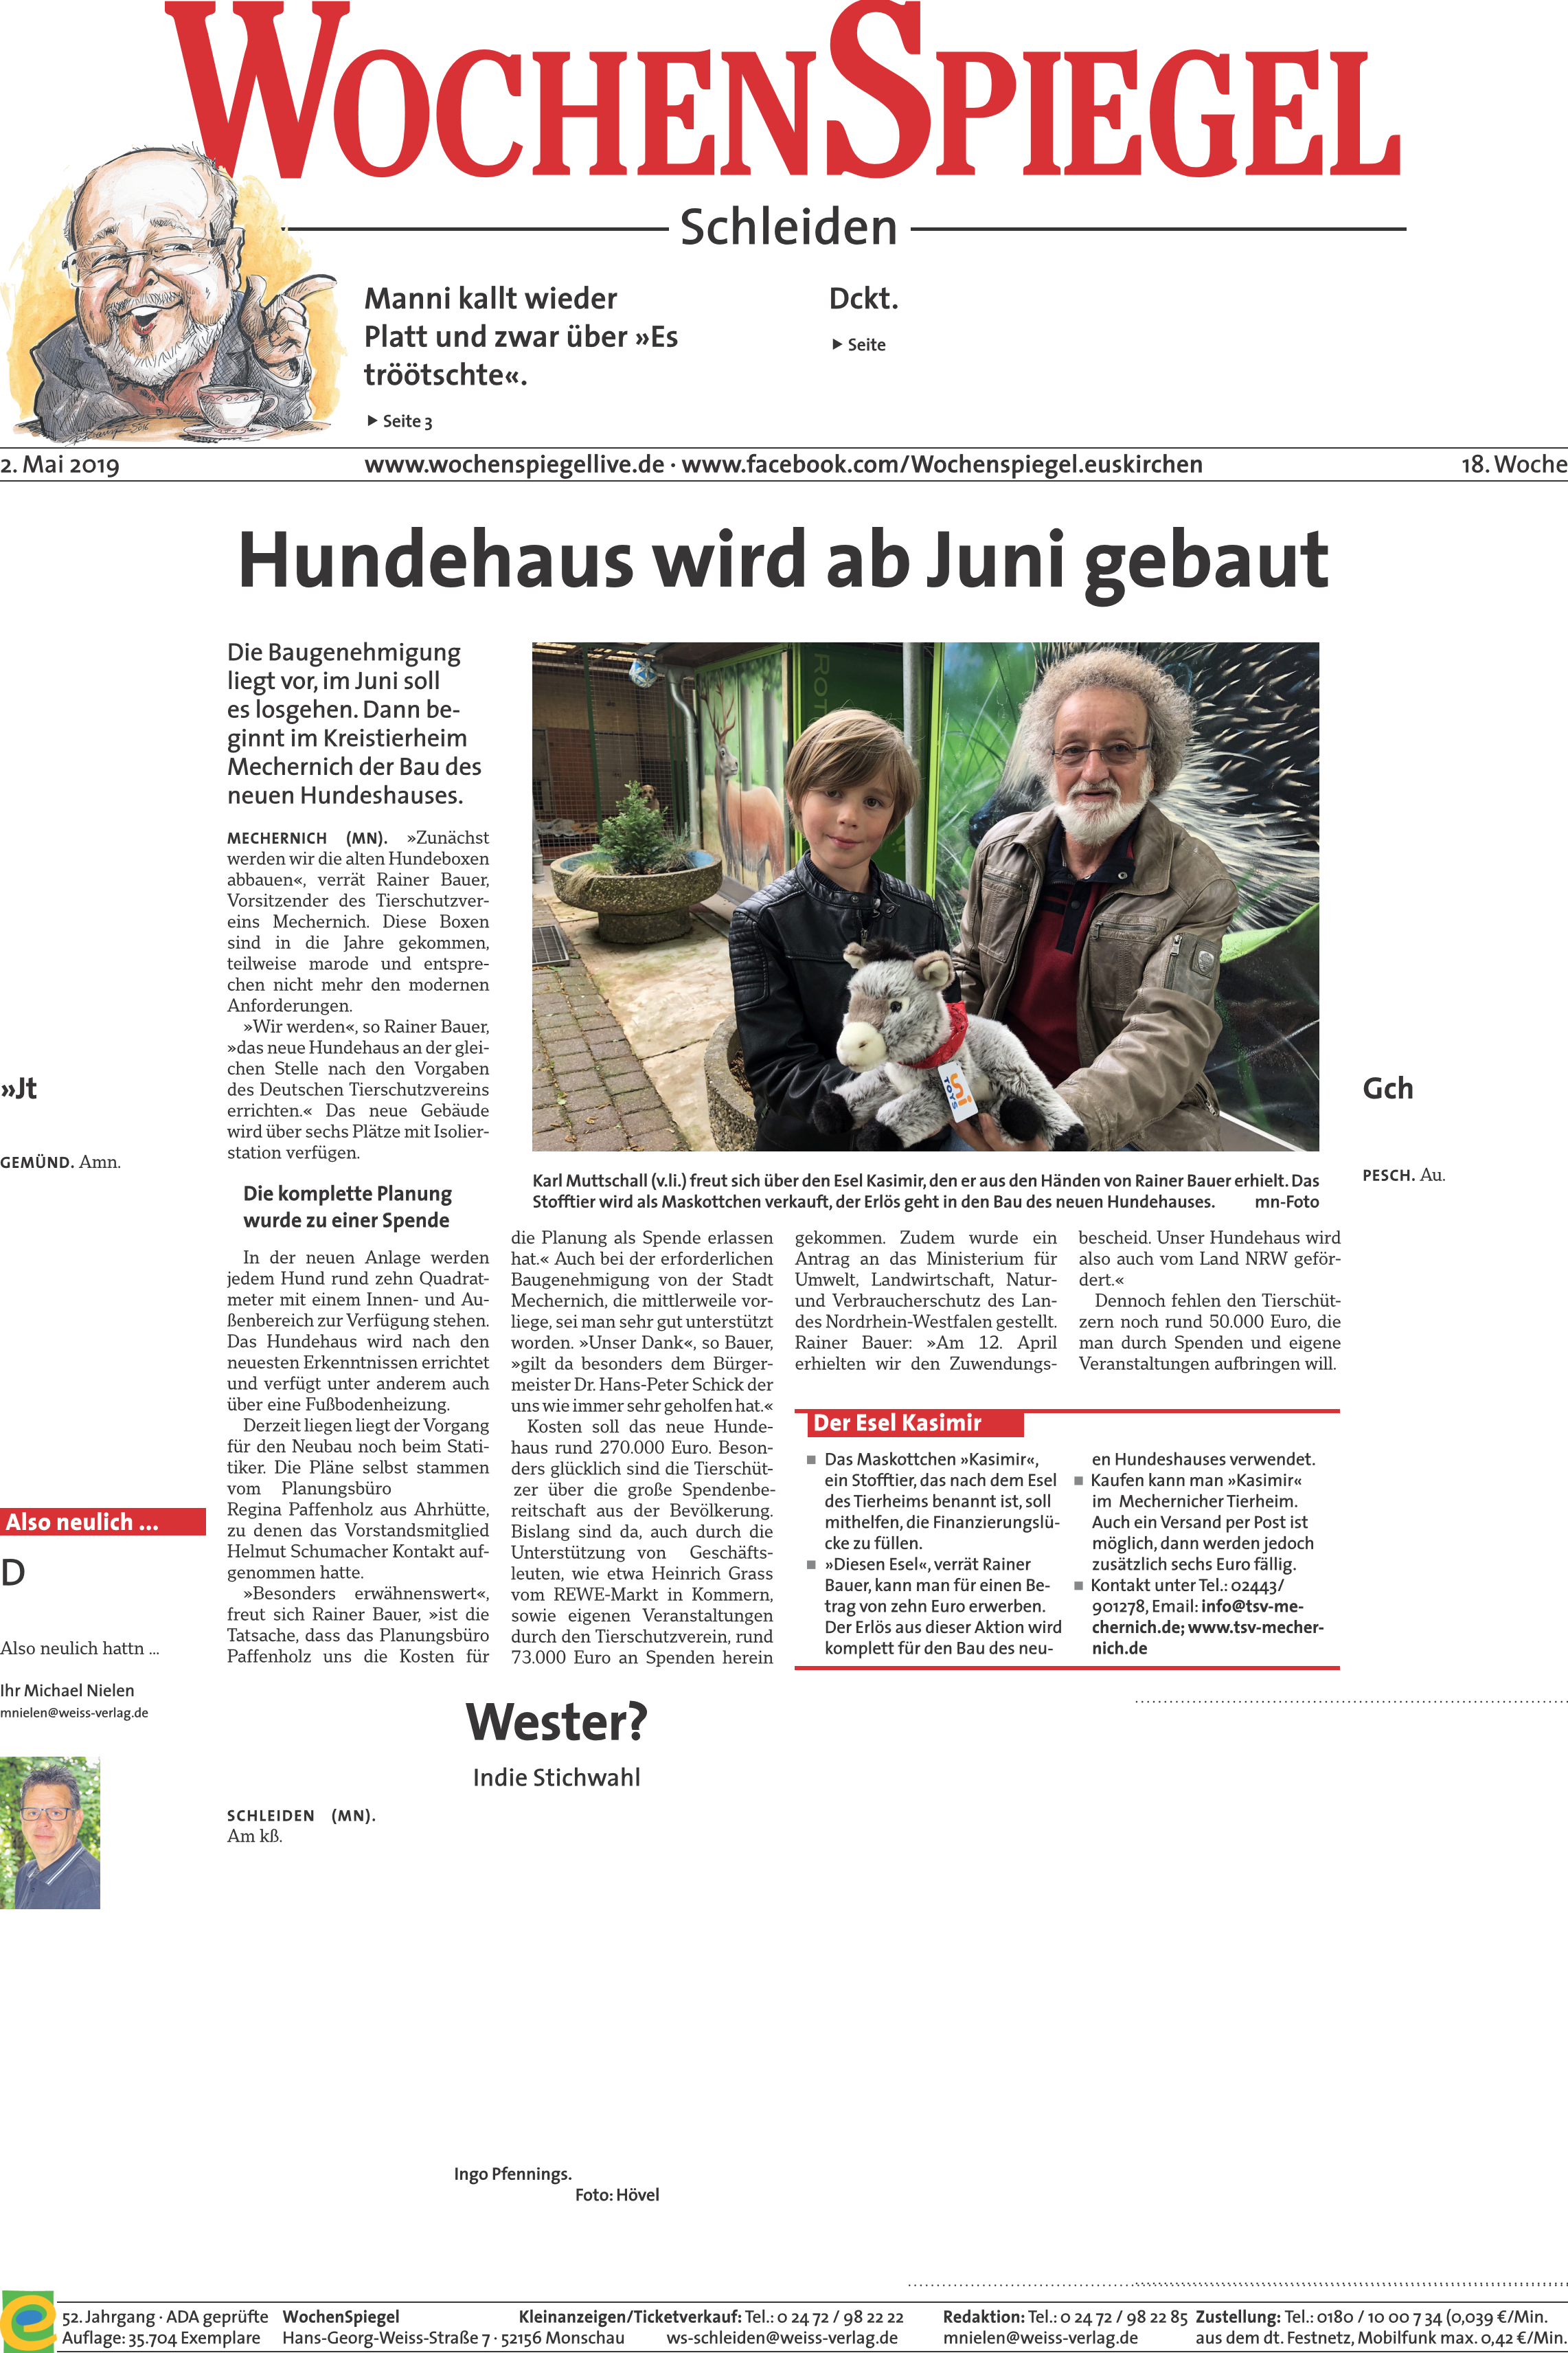 Wochenspiegel30.04.19Hundehaus Page 1